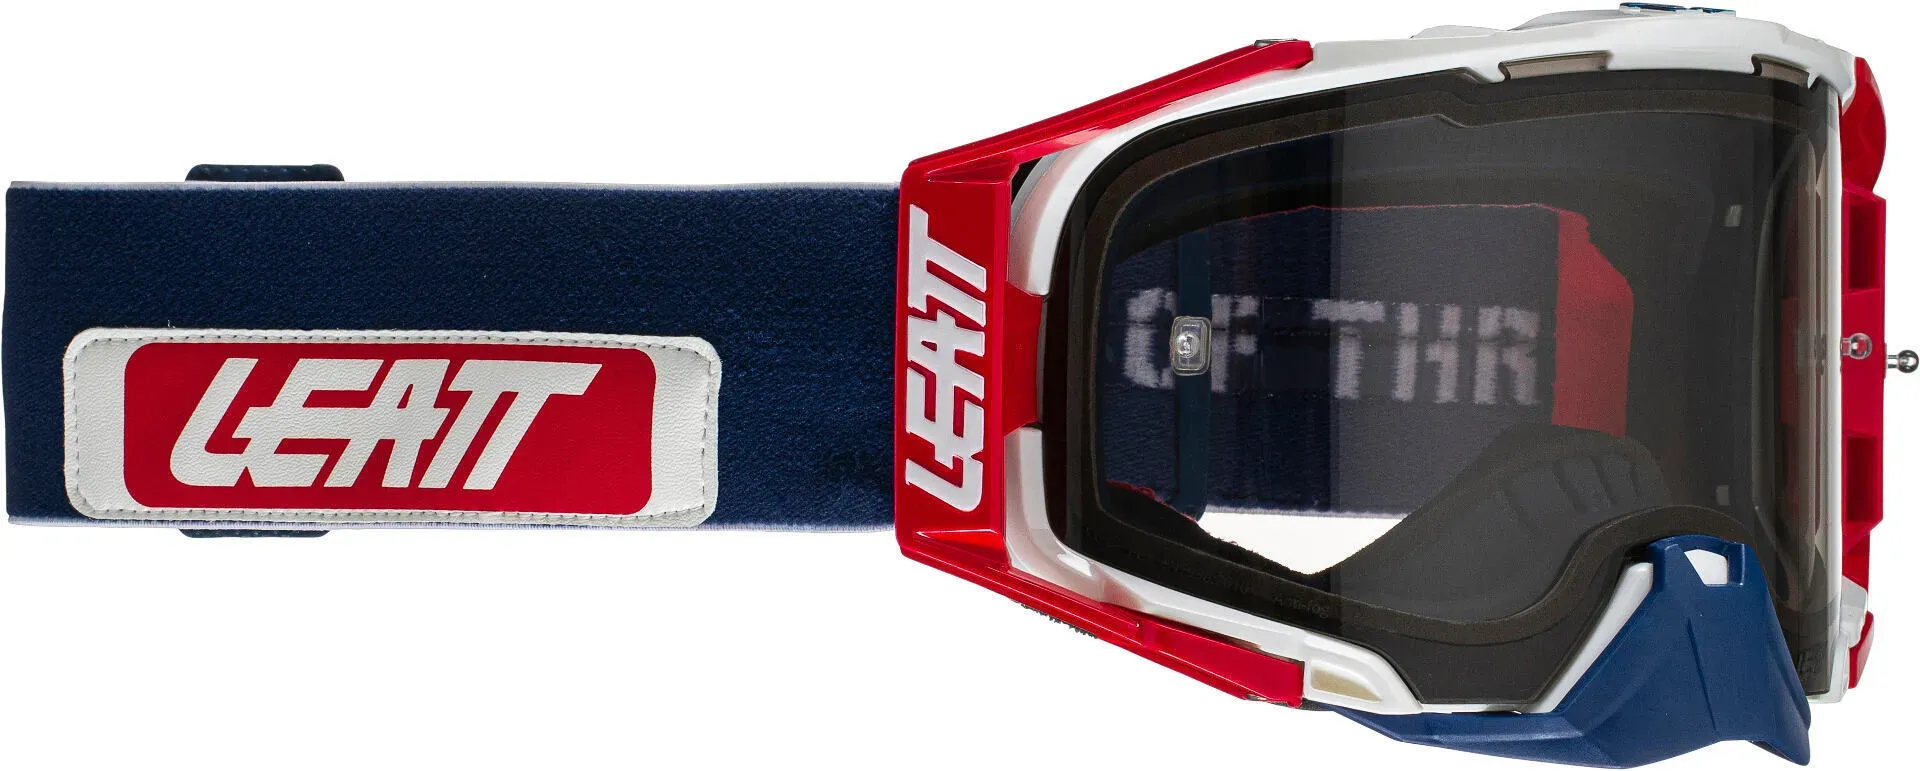 Leatt Velocity 6.5 News Motocross Brille, rot-blau